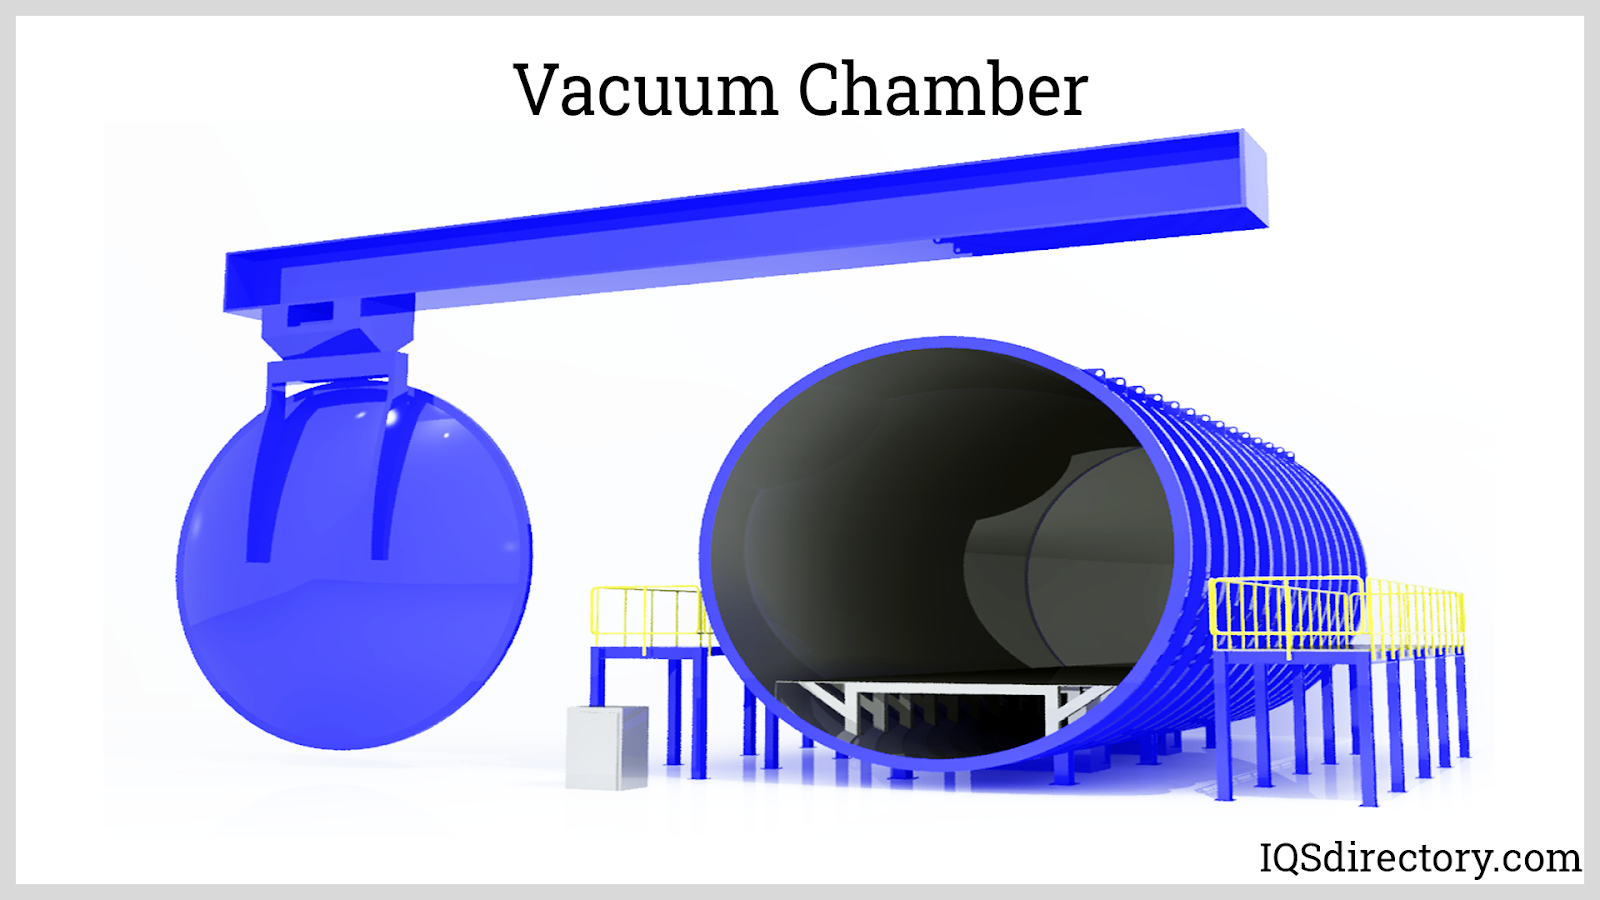 Vacuum Chambers